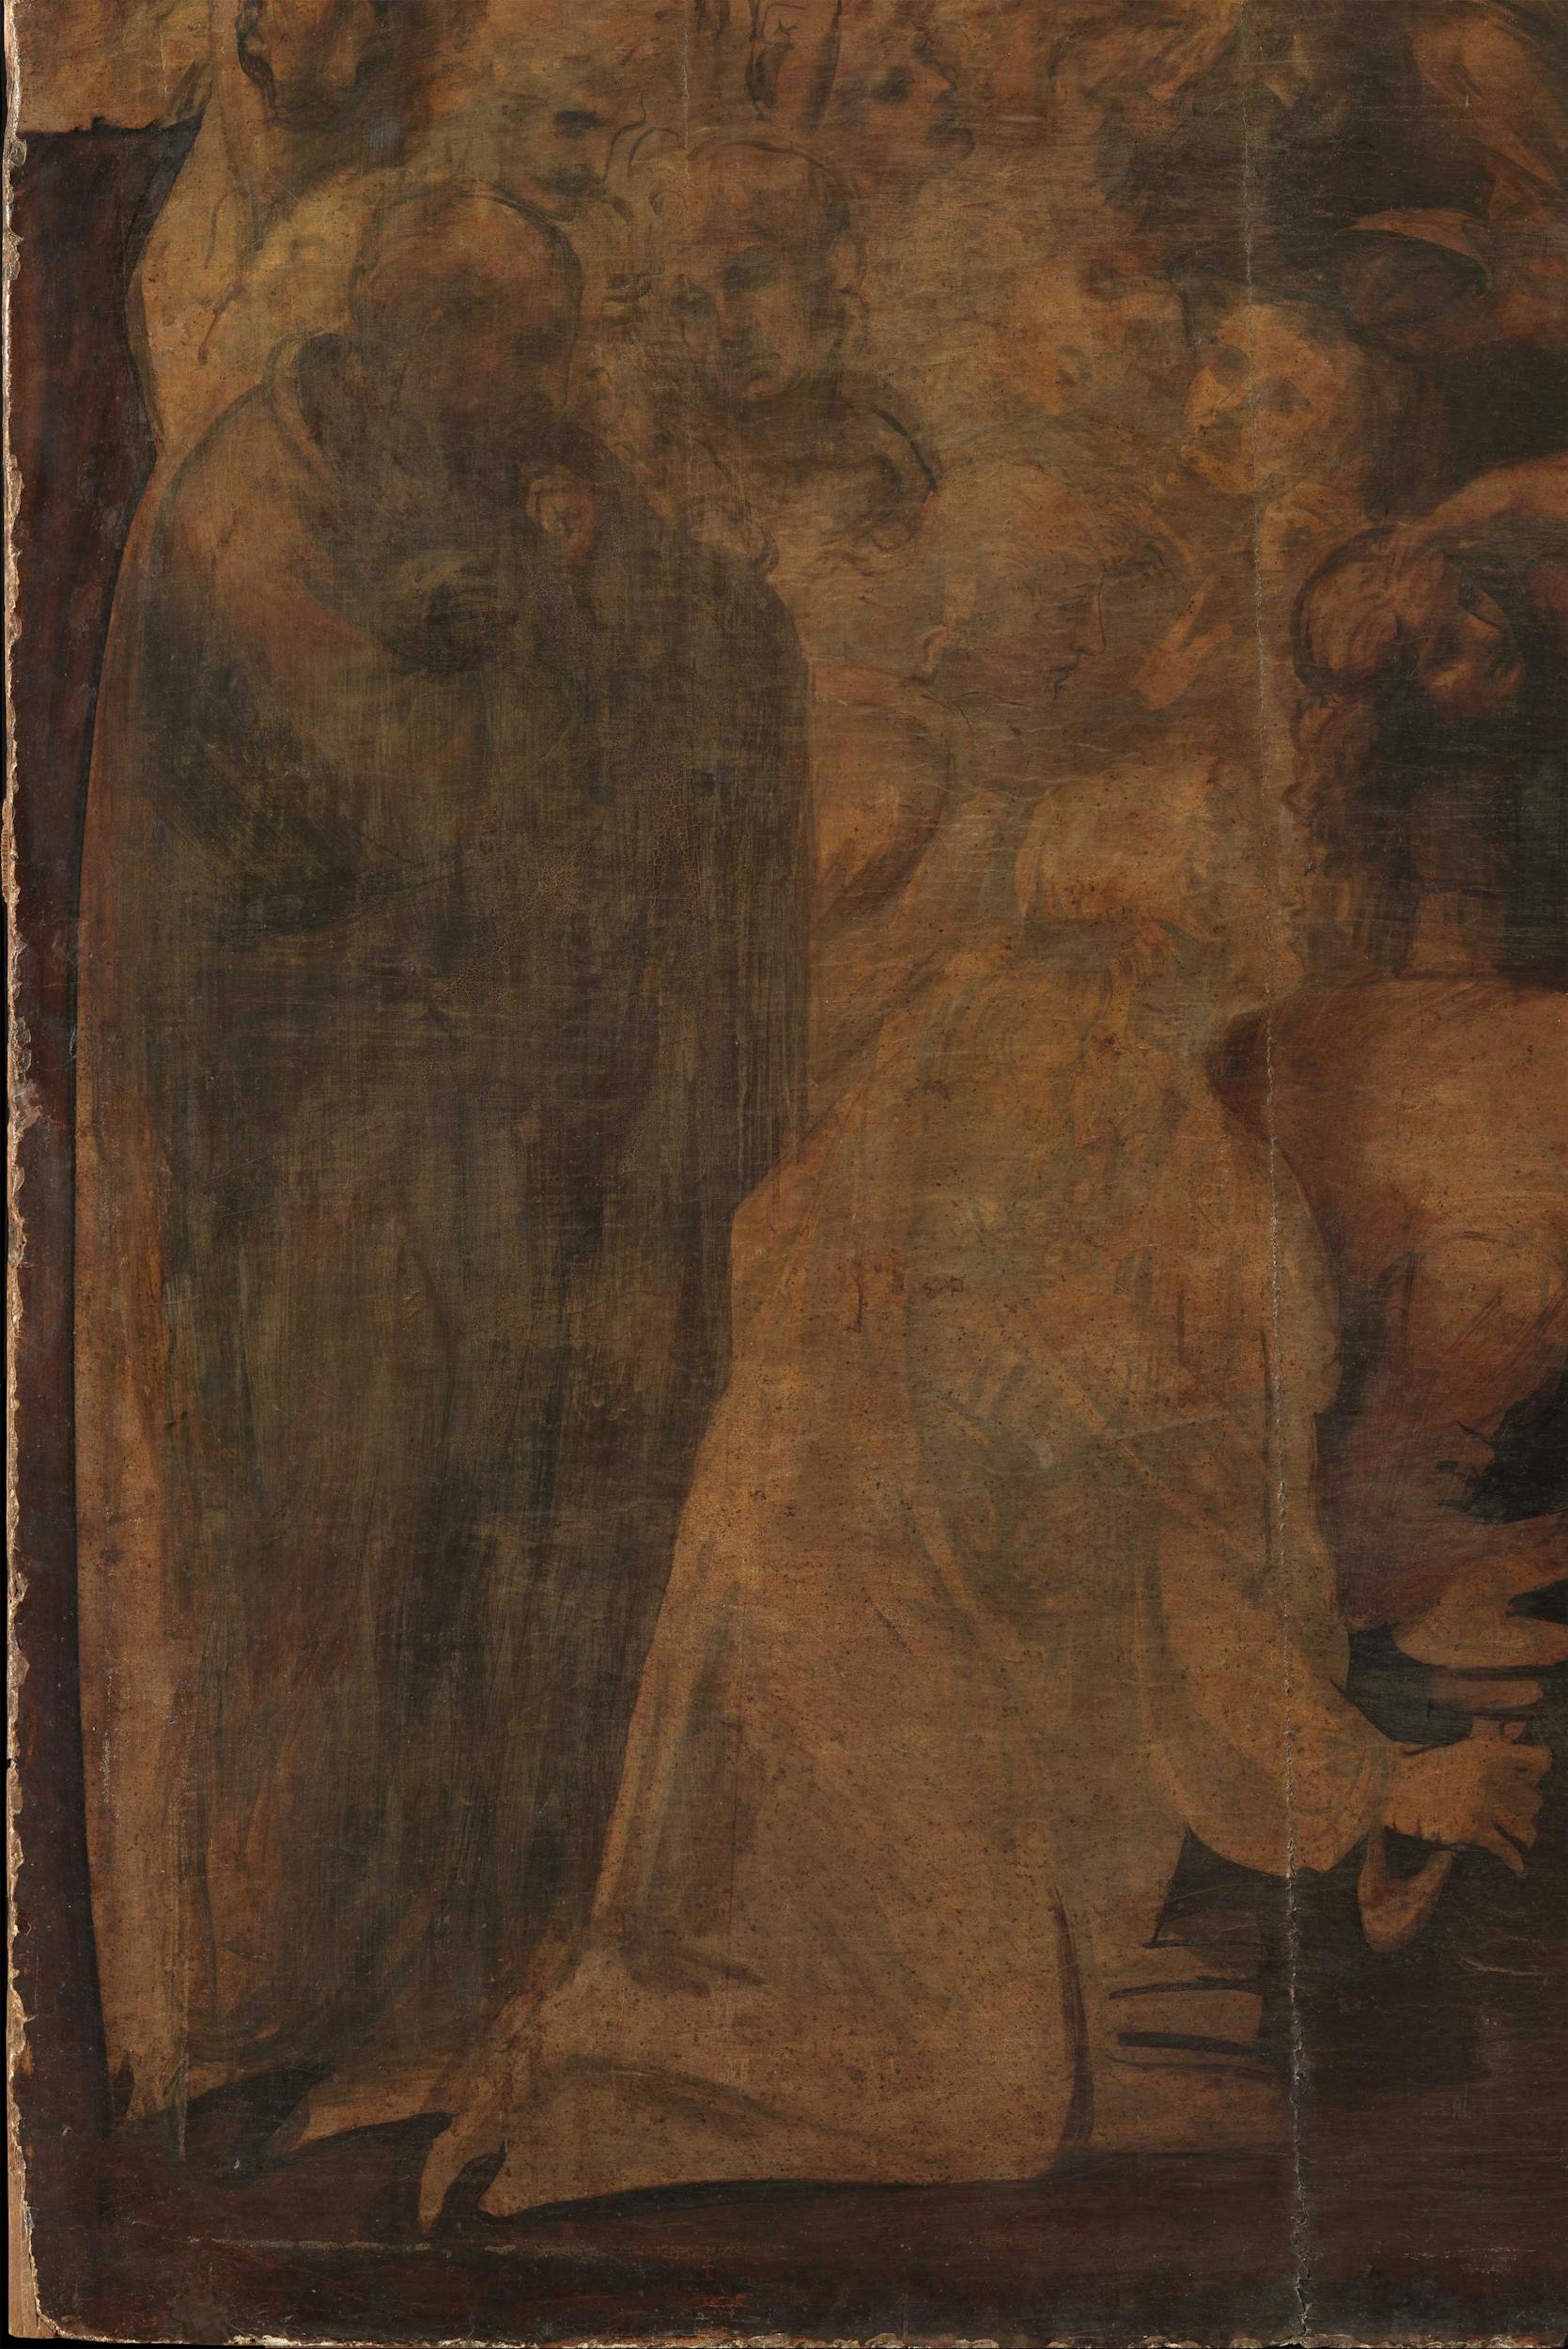 4. Particolare del personaggio in pedi, a sinistra, prima del restauro